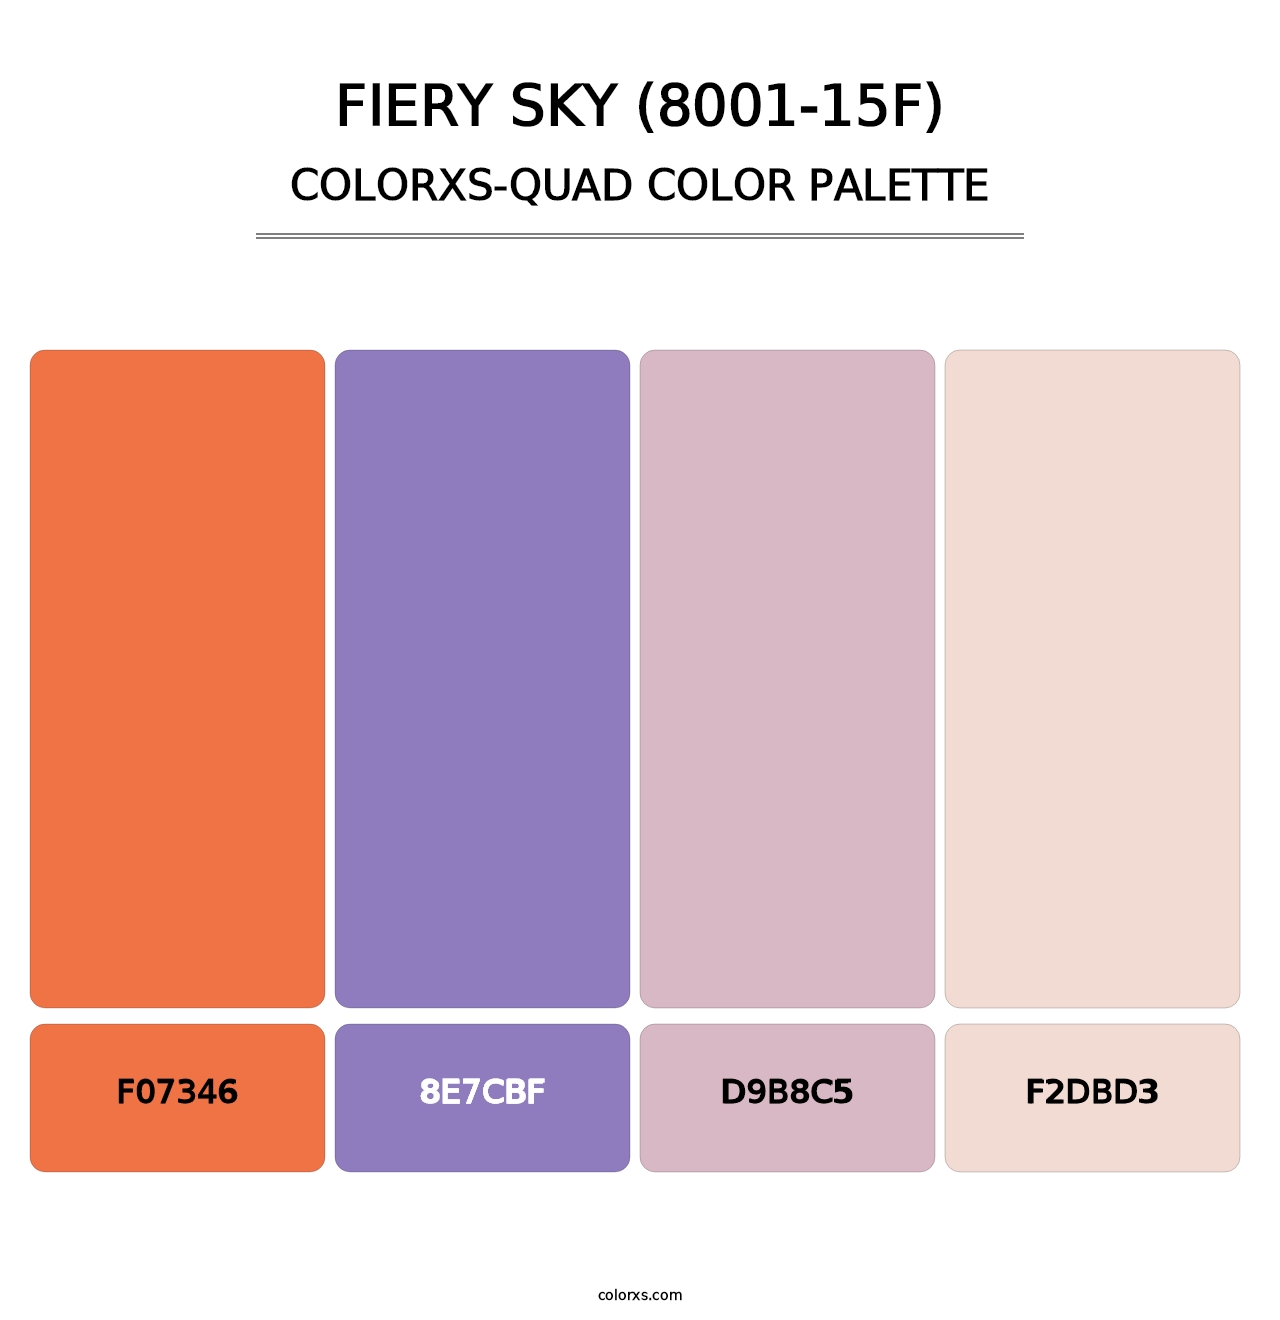 Fiery Sky (8001-15F) - Colorxs Quad Palette